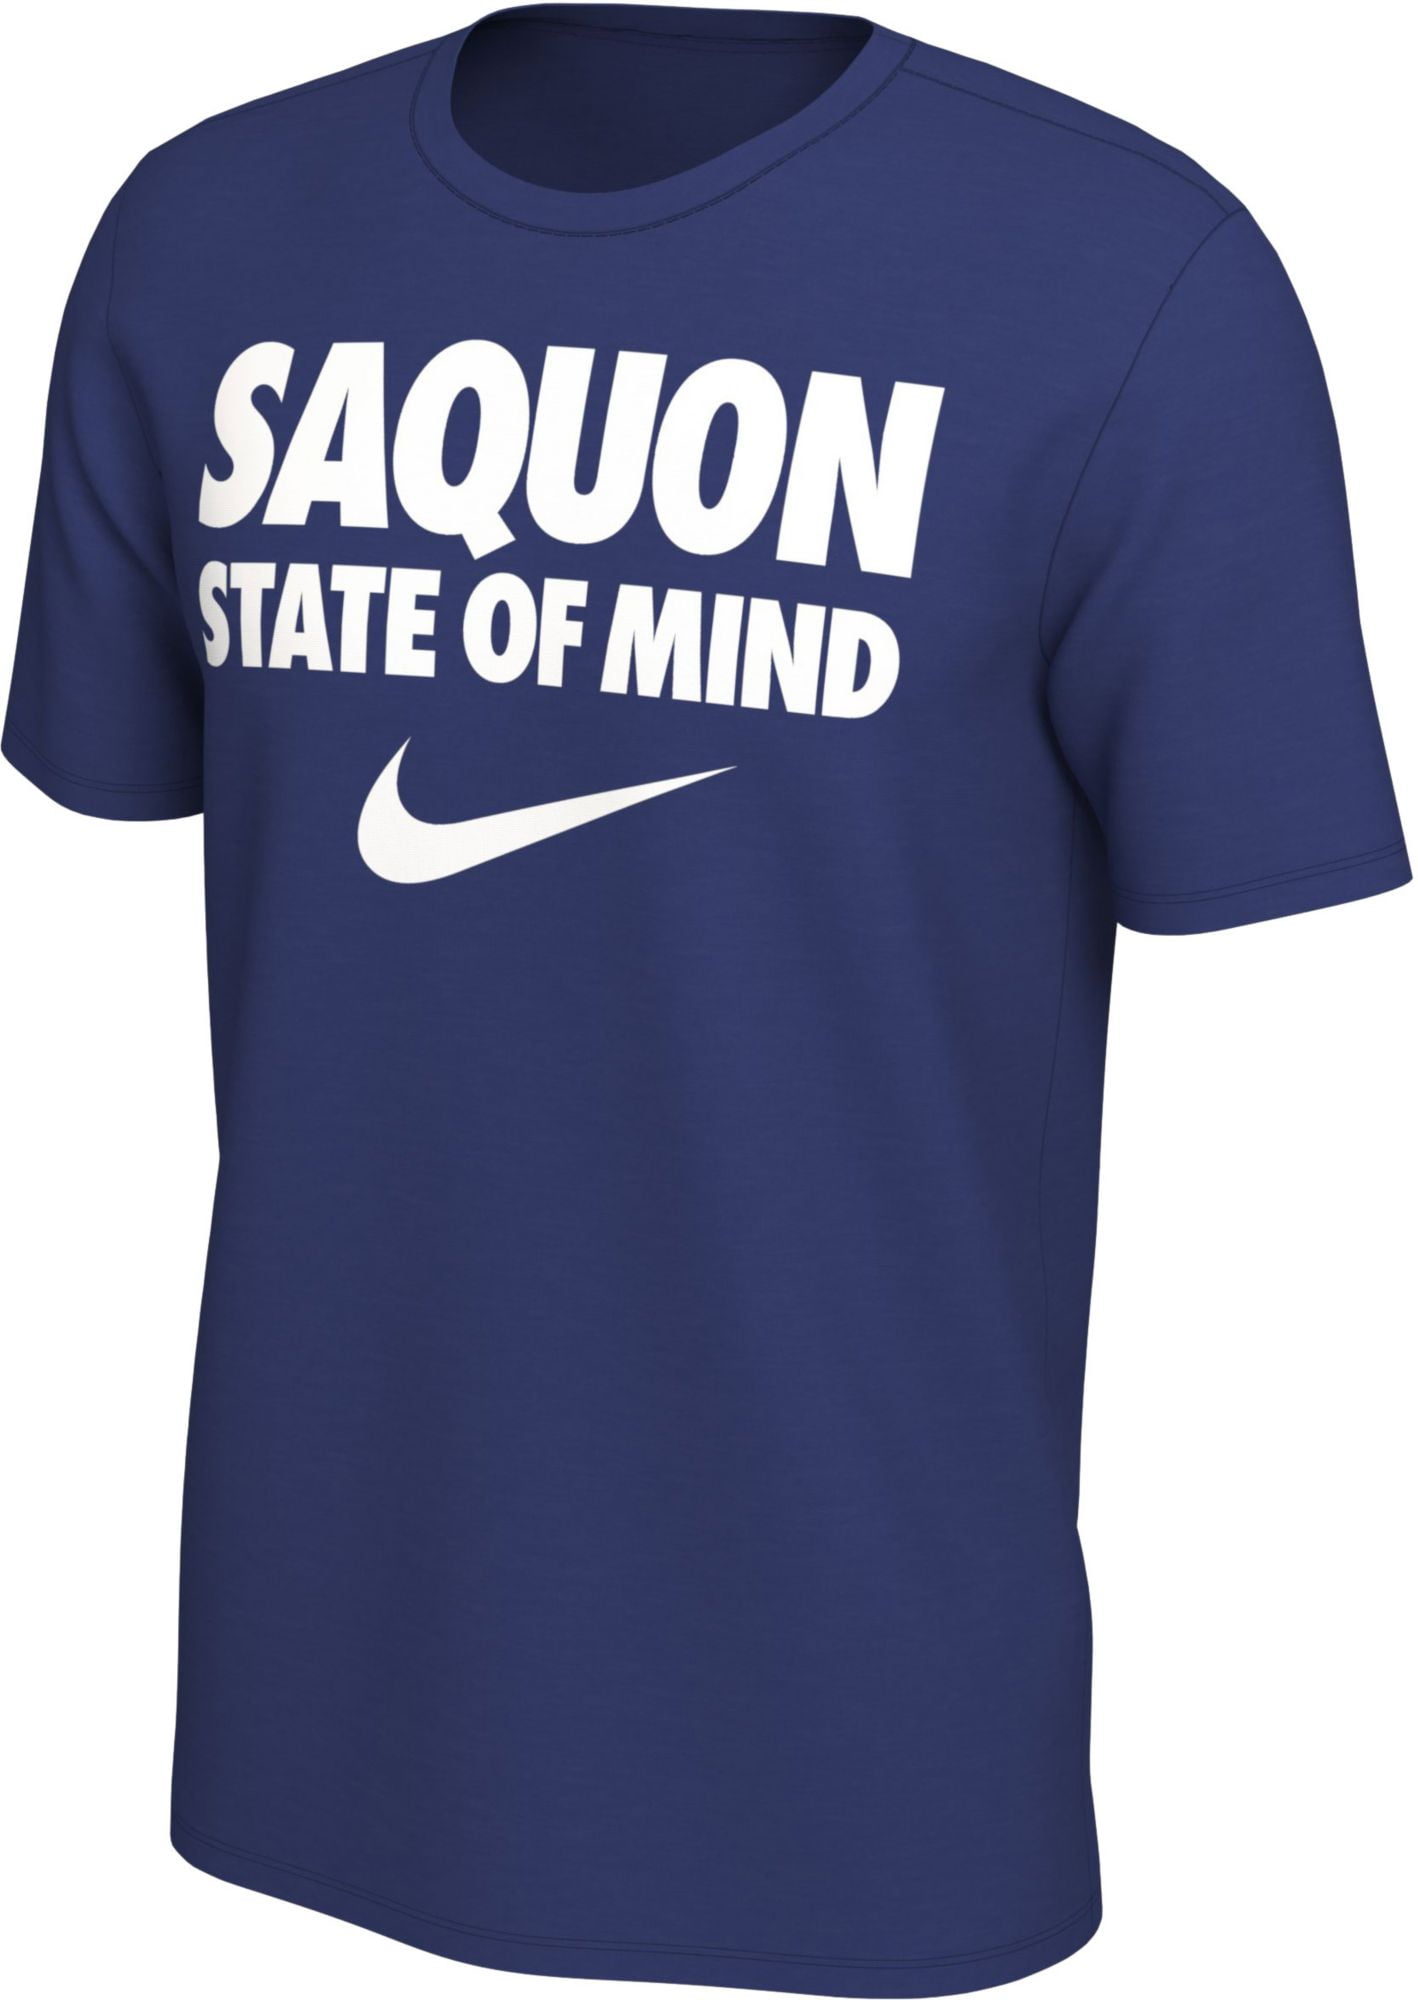 saquon shirt